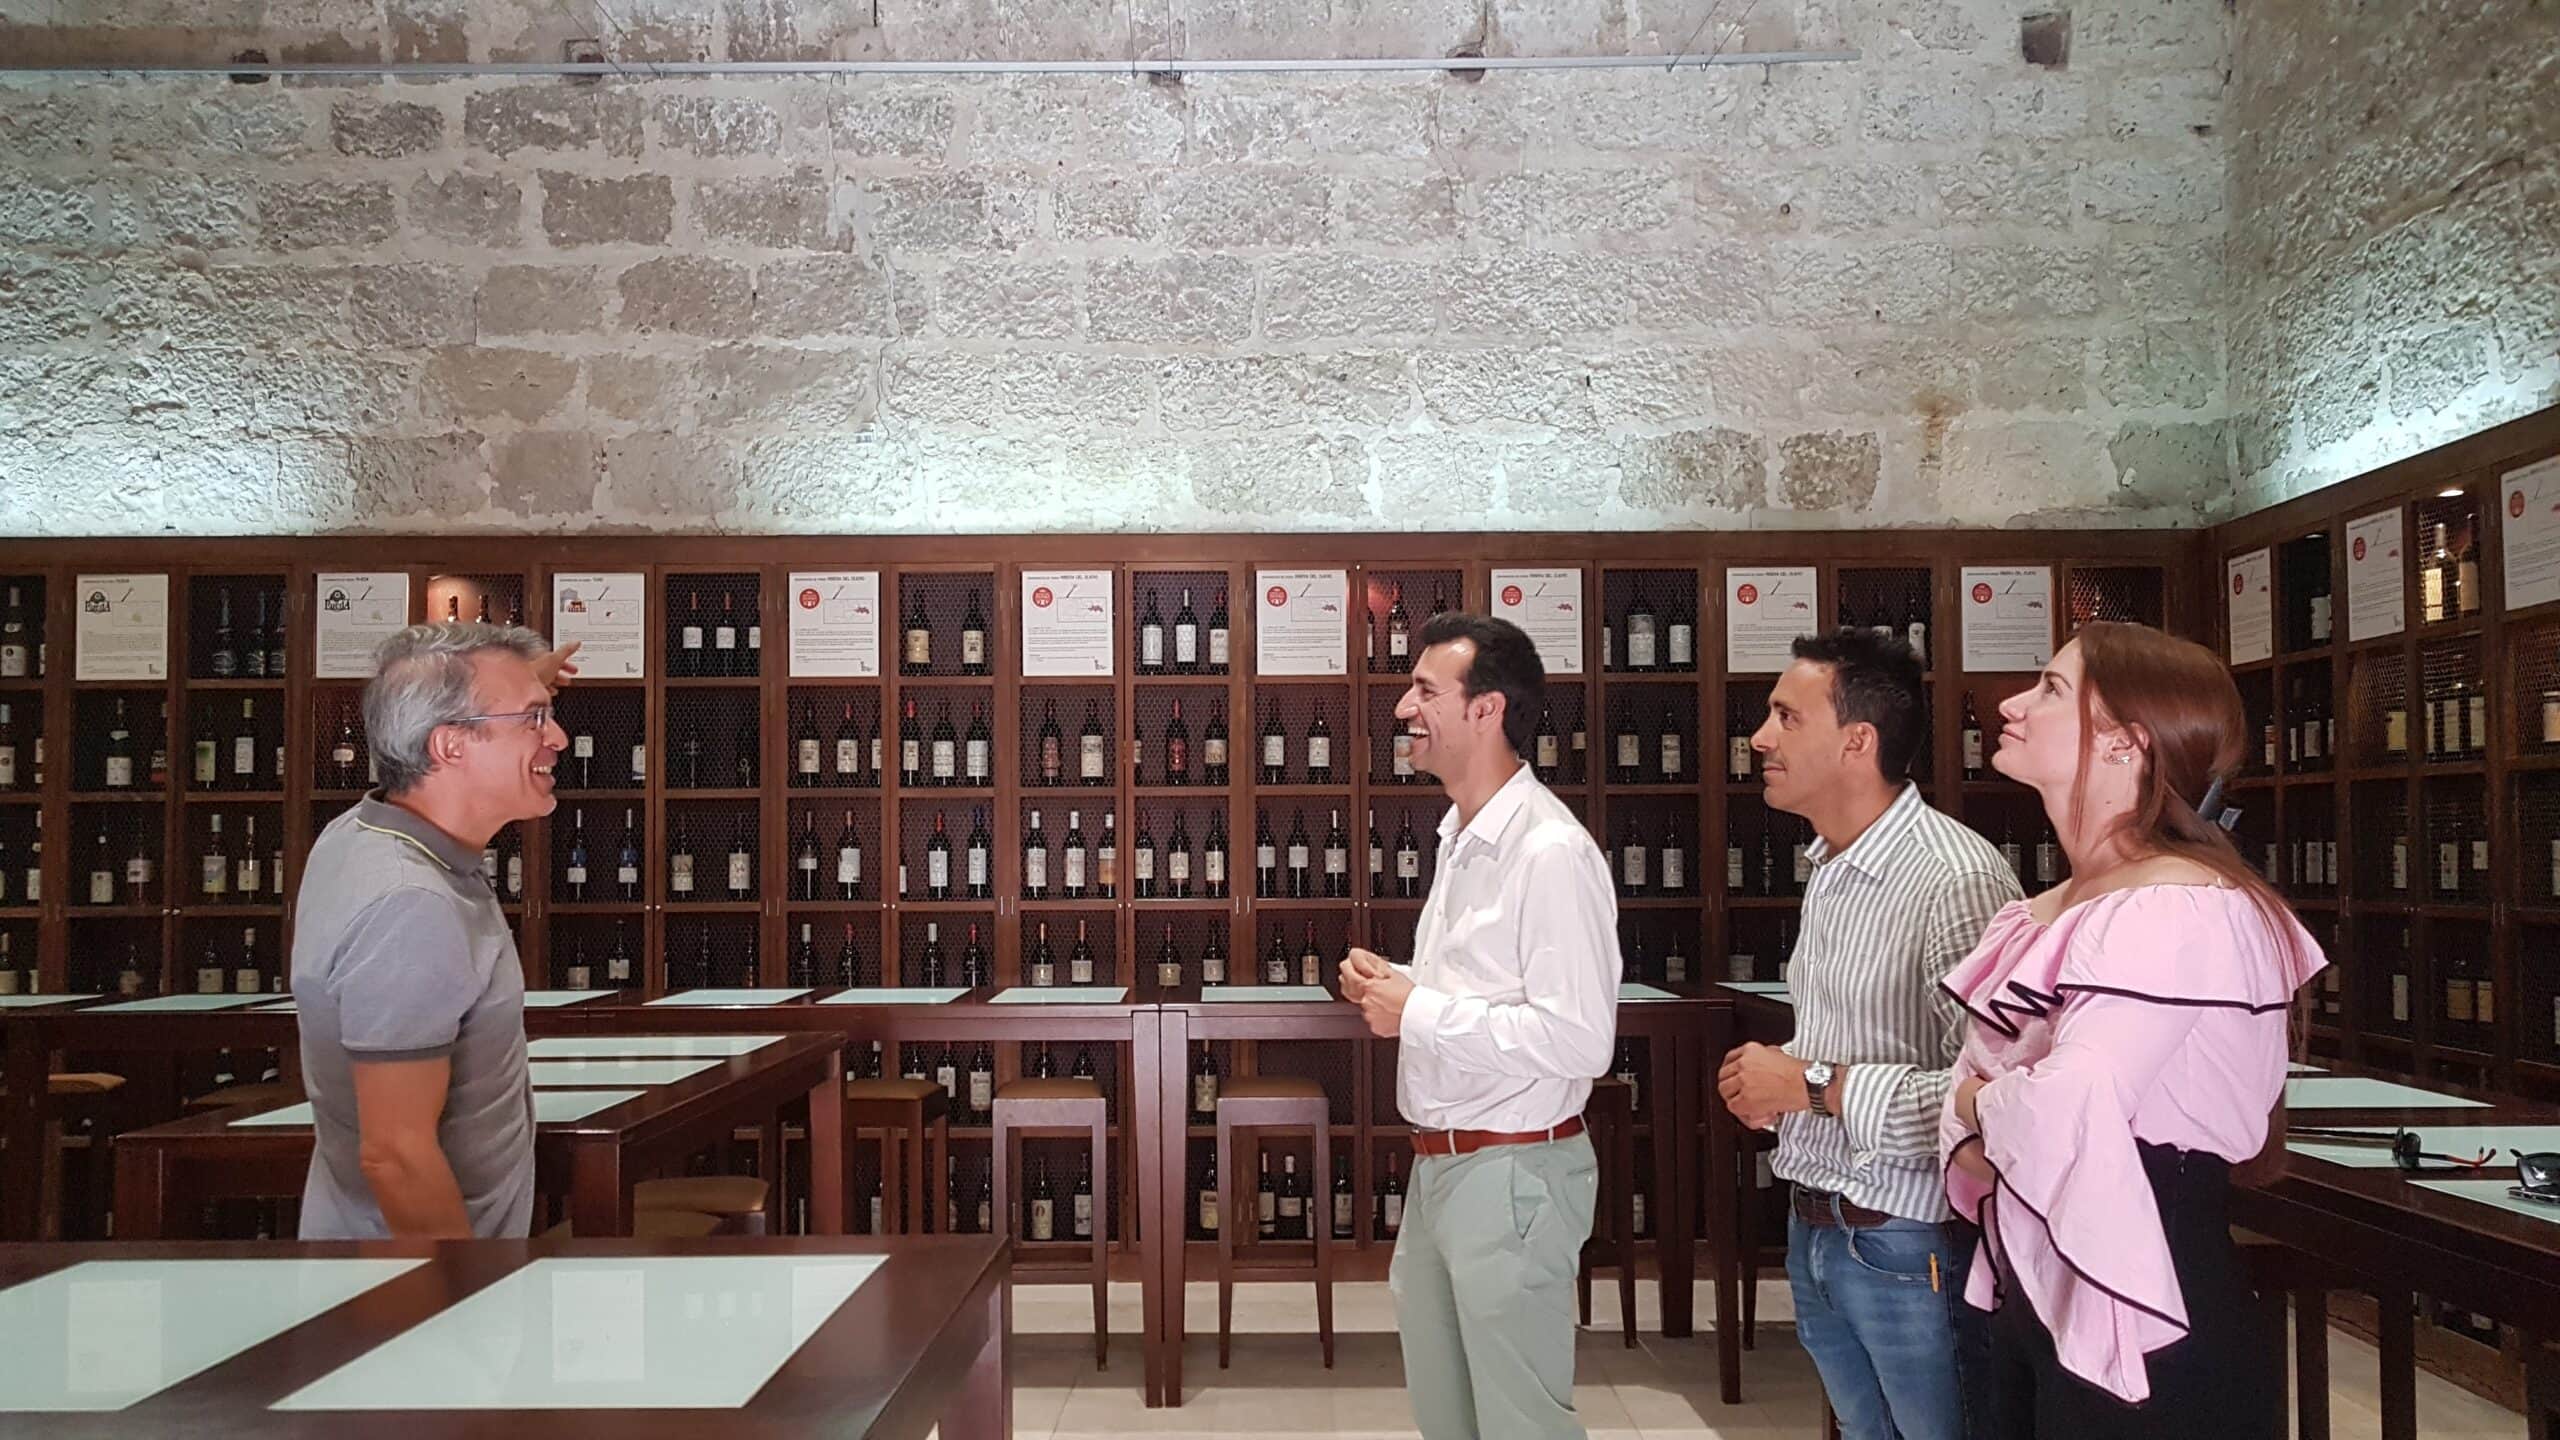 A Deputação Foral de Valladolid promove novas tecnologias no Museu do Vinho de Peñafiel